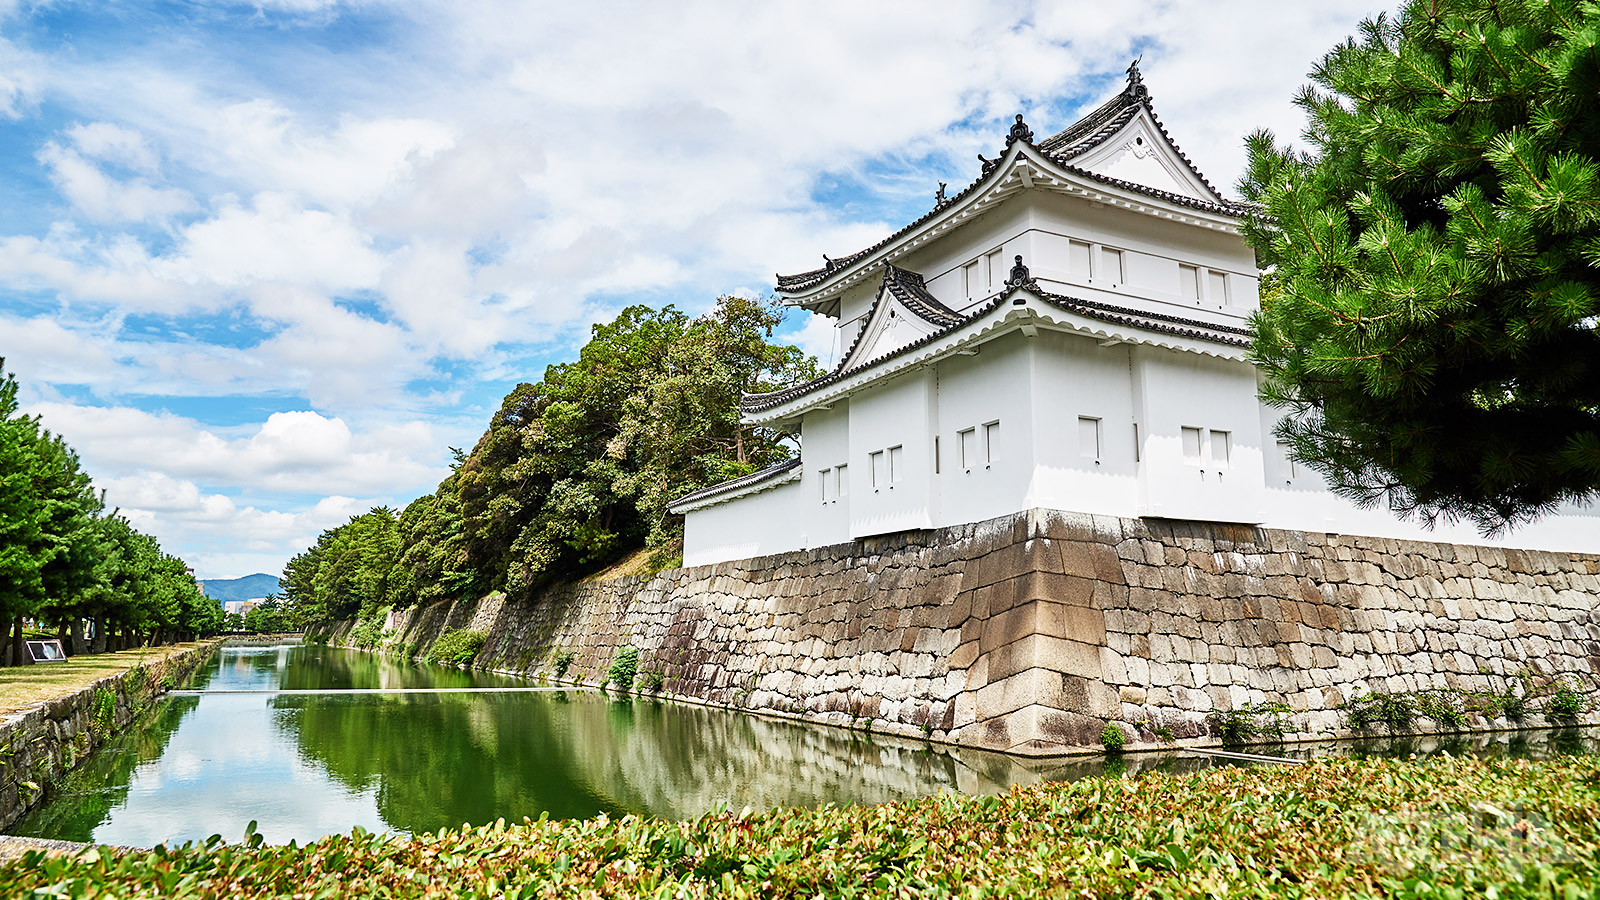 Het Nijo kasteel is sinds 1994 met 13 andere monumenten van Kyoto erkend door Unesco als werelderfgoed